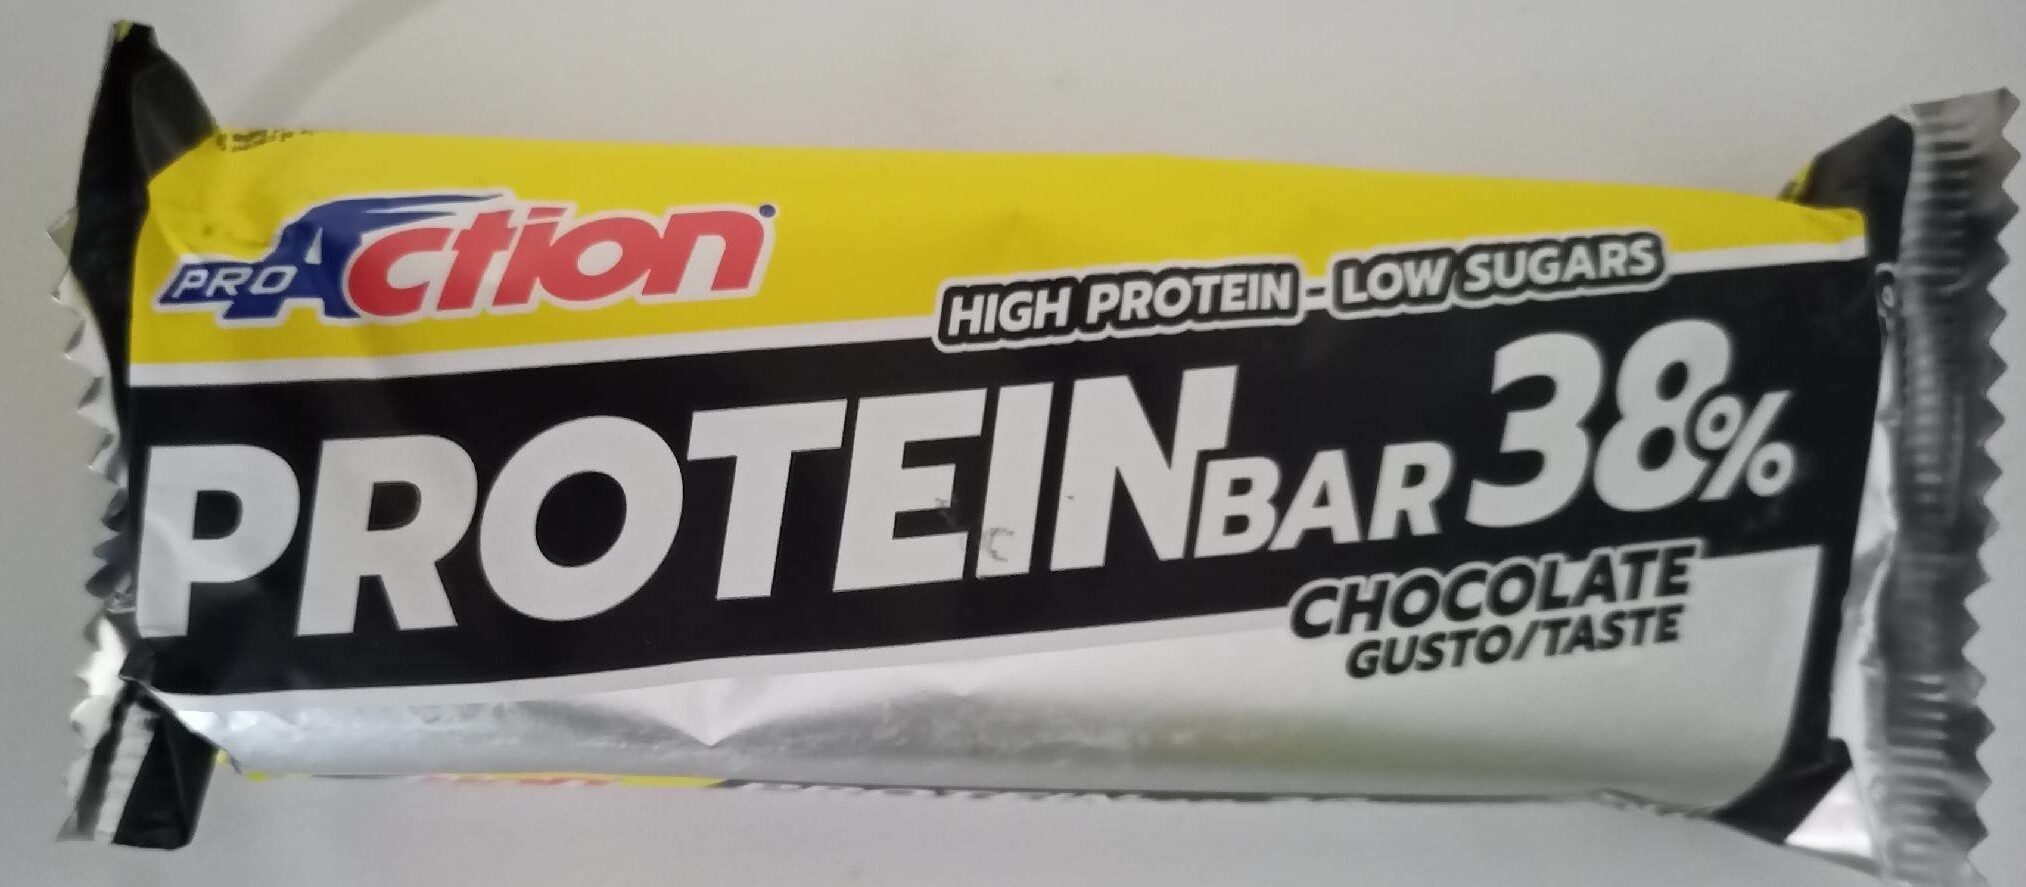 Protein bar chocolate 38% - Prodotto